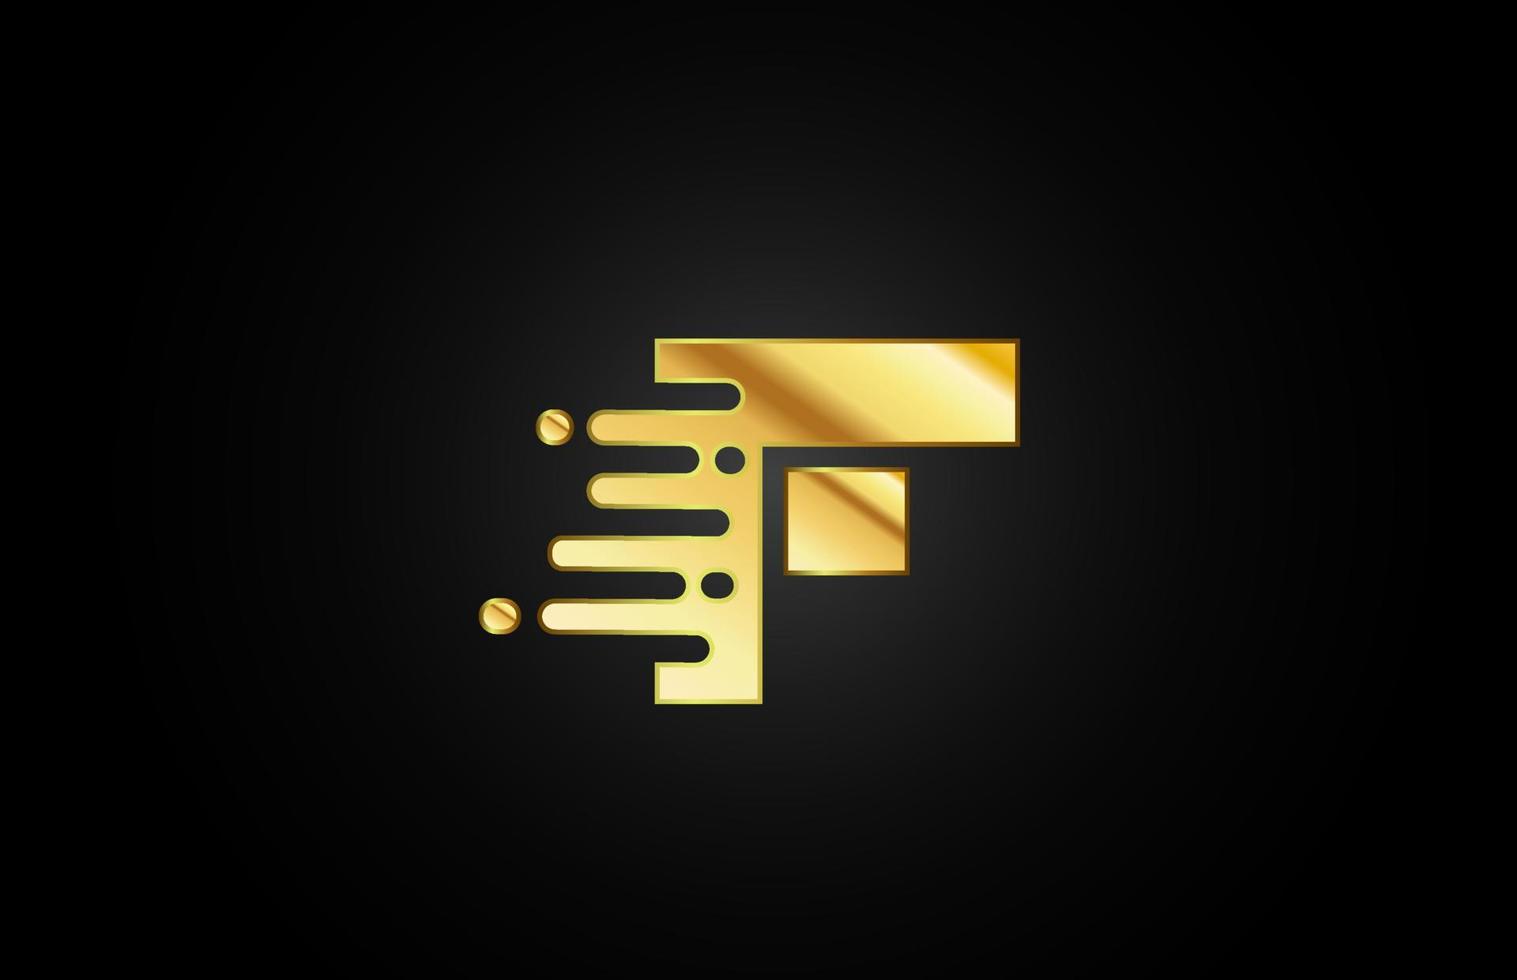 f letter logo icoon voor zaken en bedrijf vector